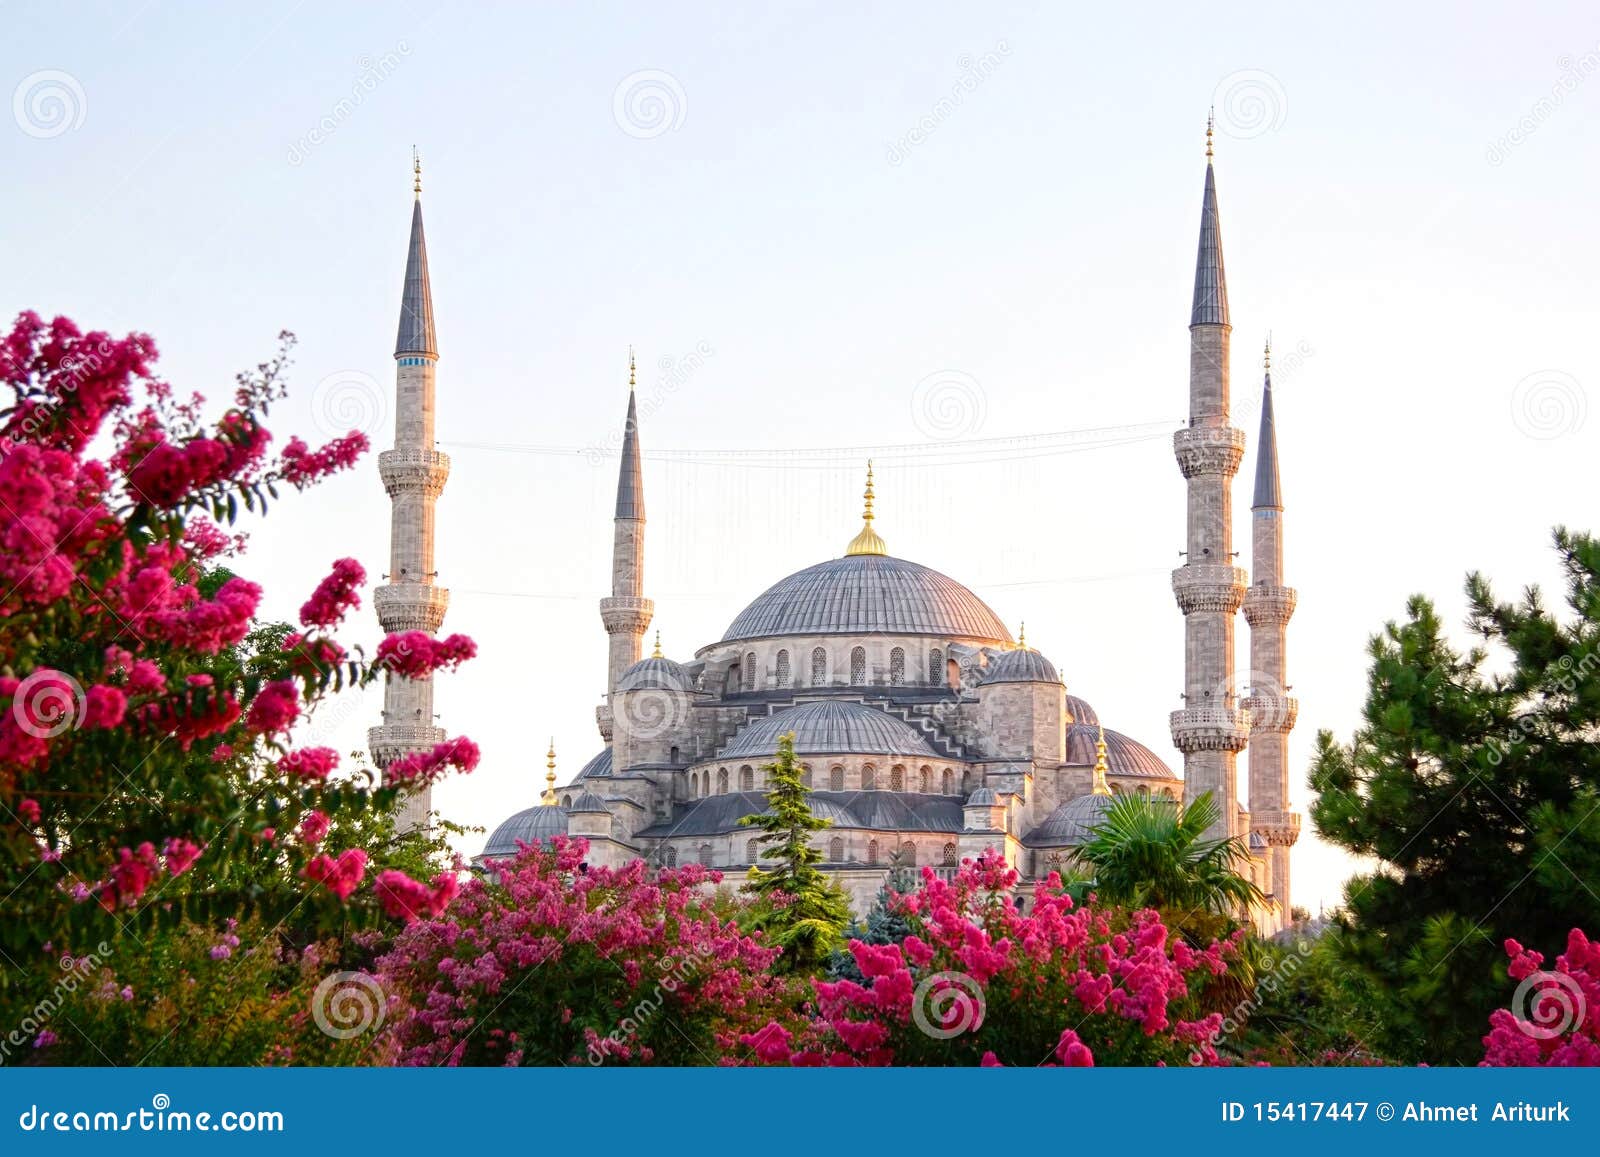 sultanahmet, blue mosque